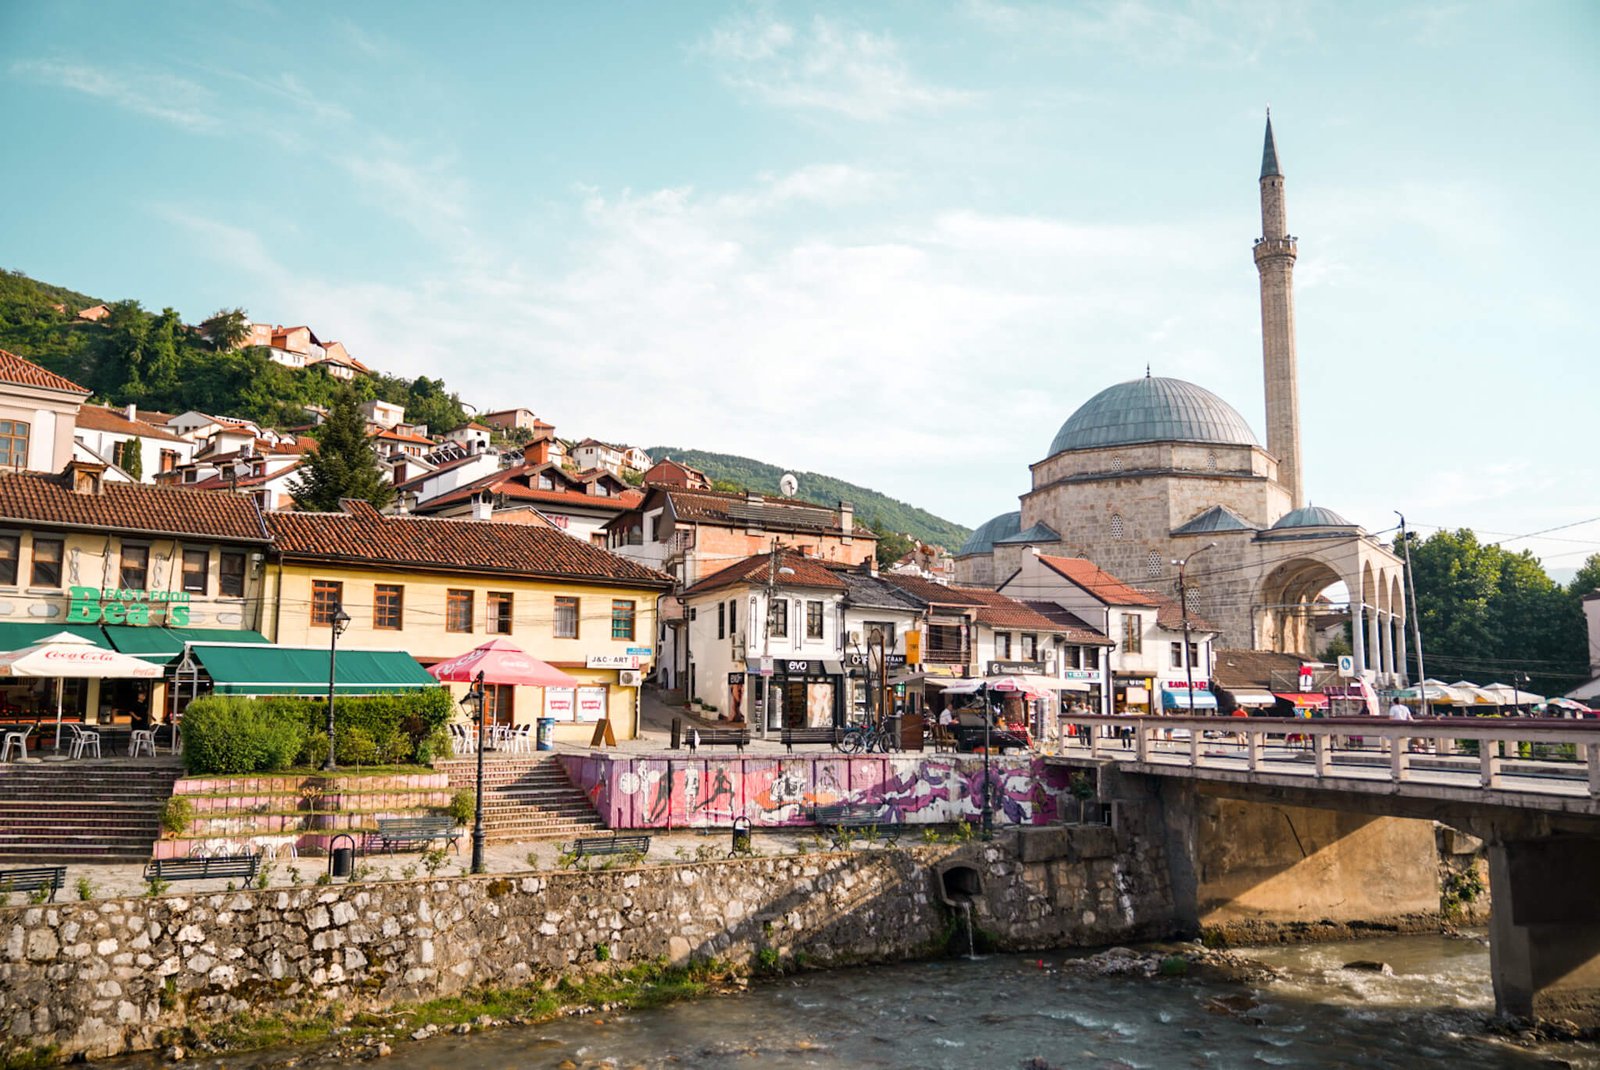 Old Town of Prizren, things to do in Prizren Kosovo